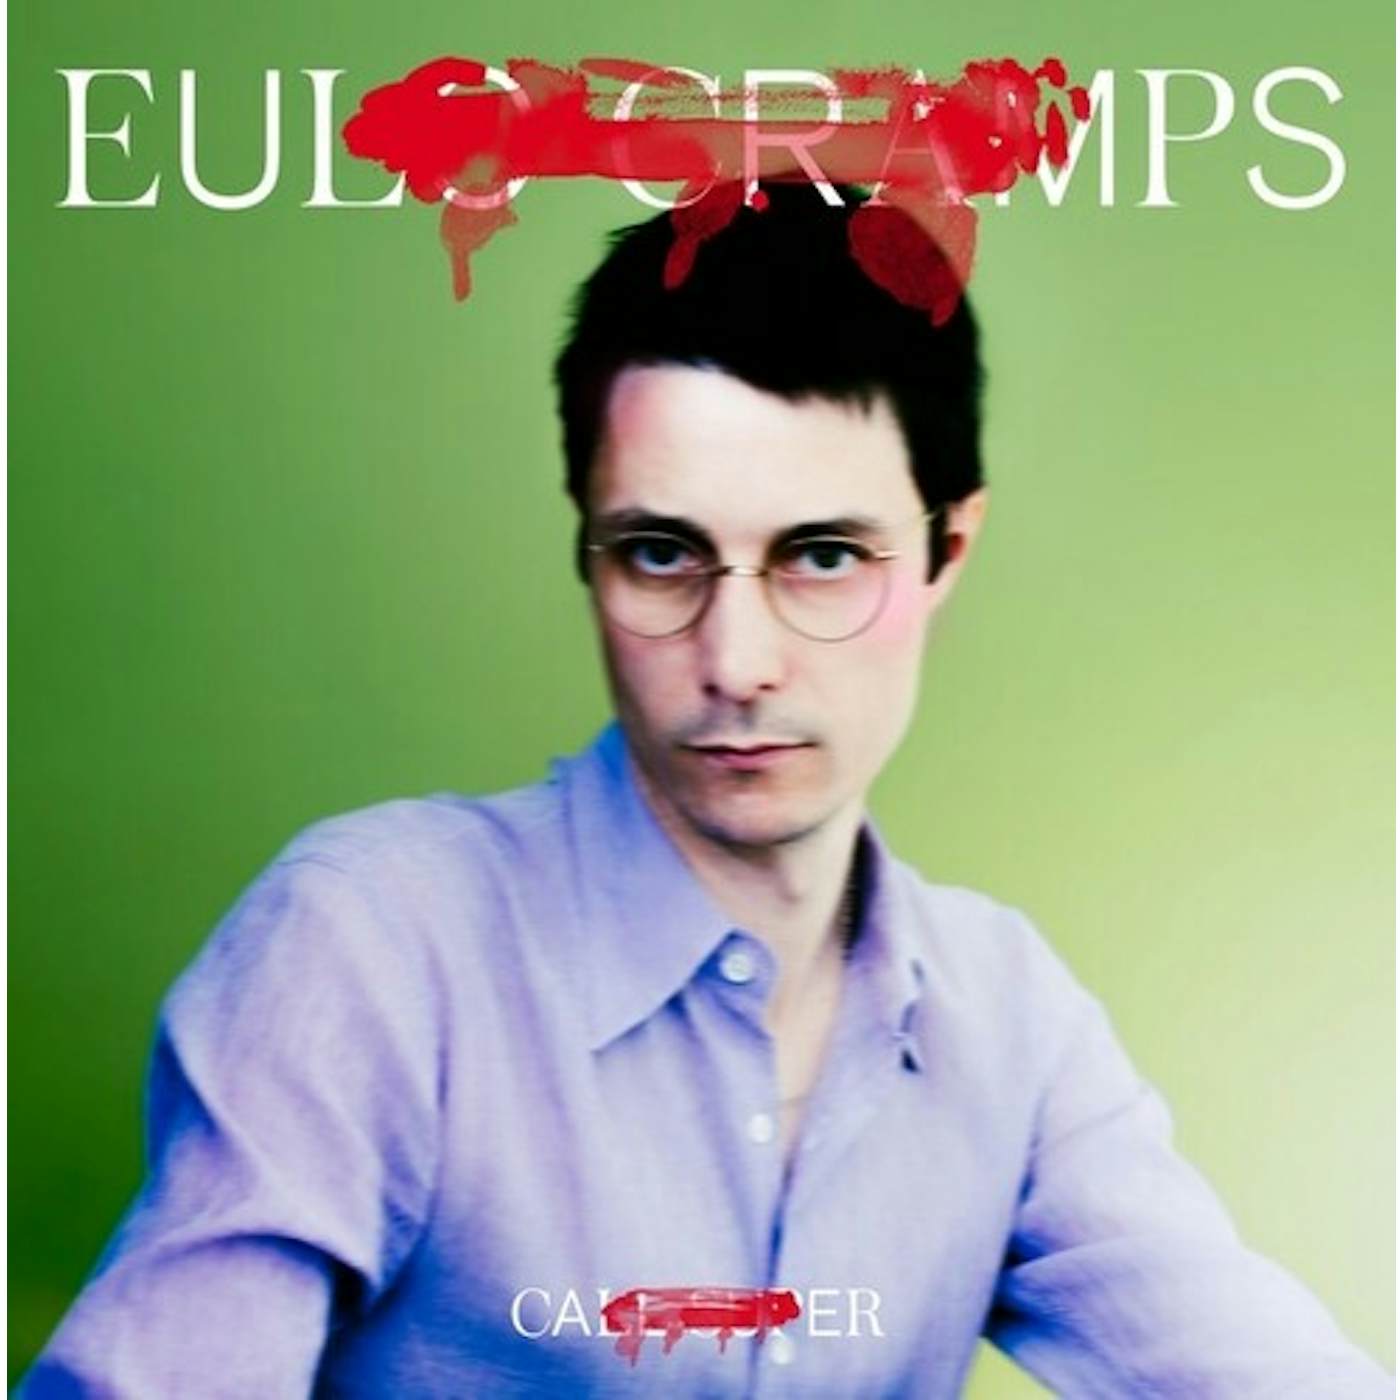 Call Super EULO CRAMPS Vinyl Record